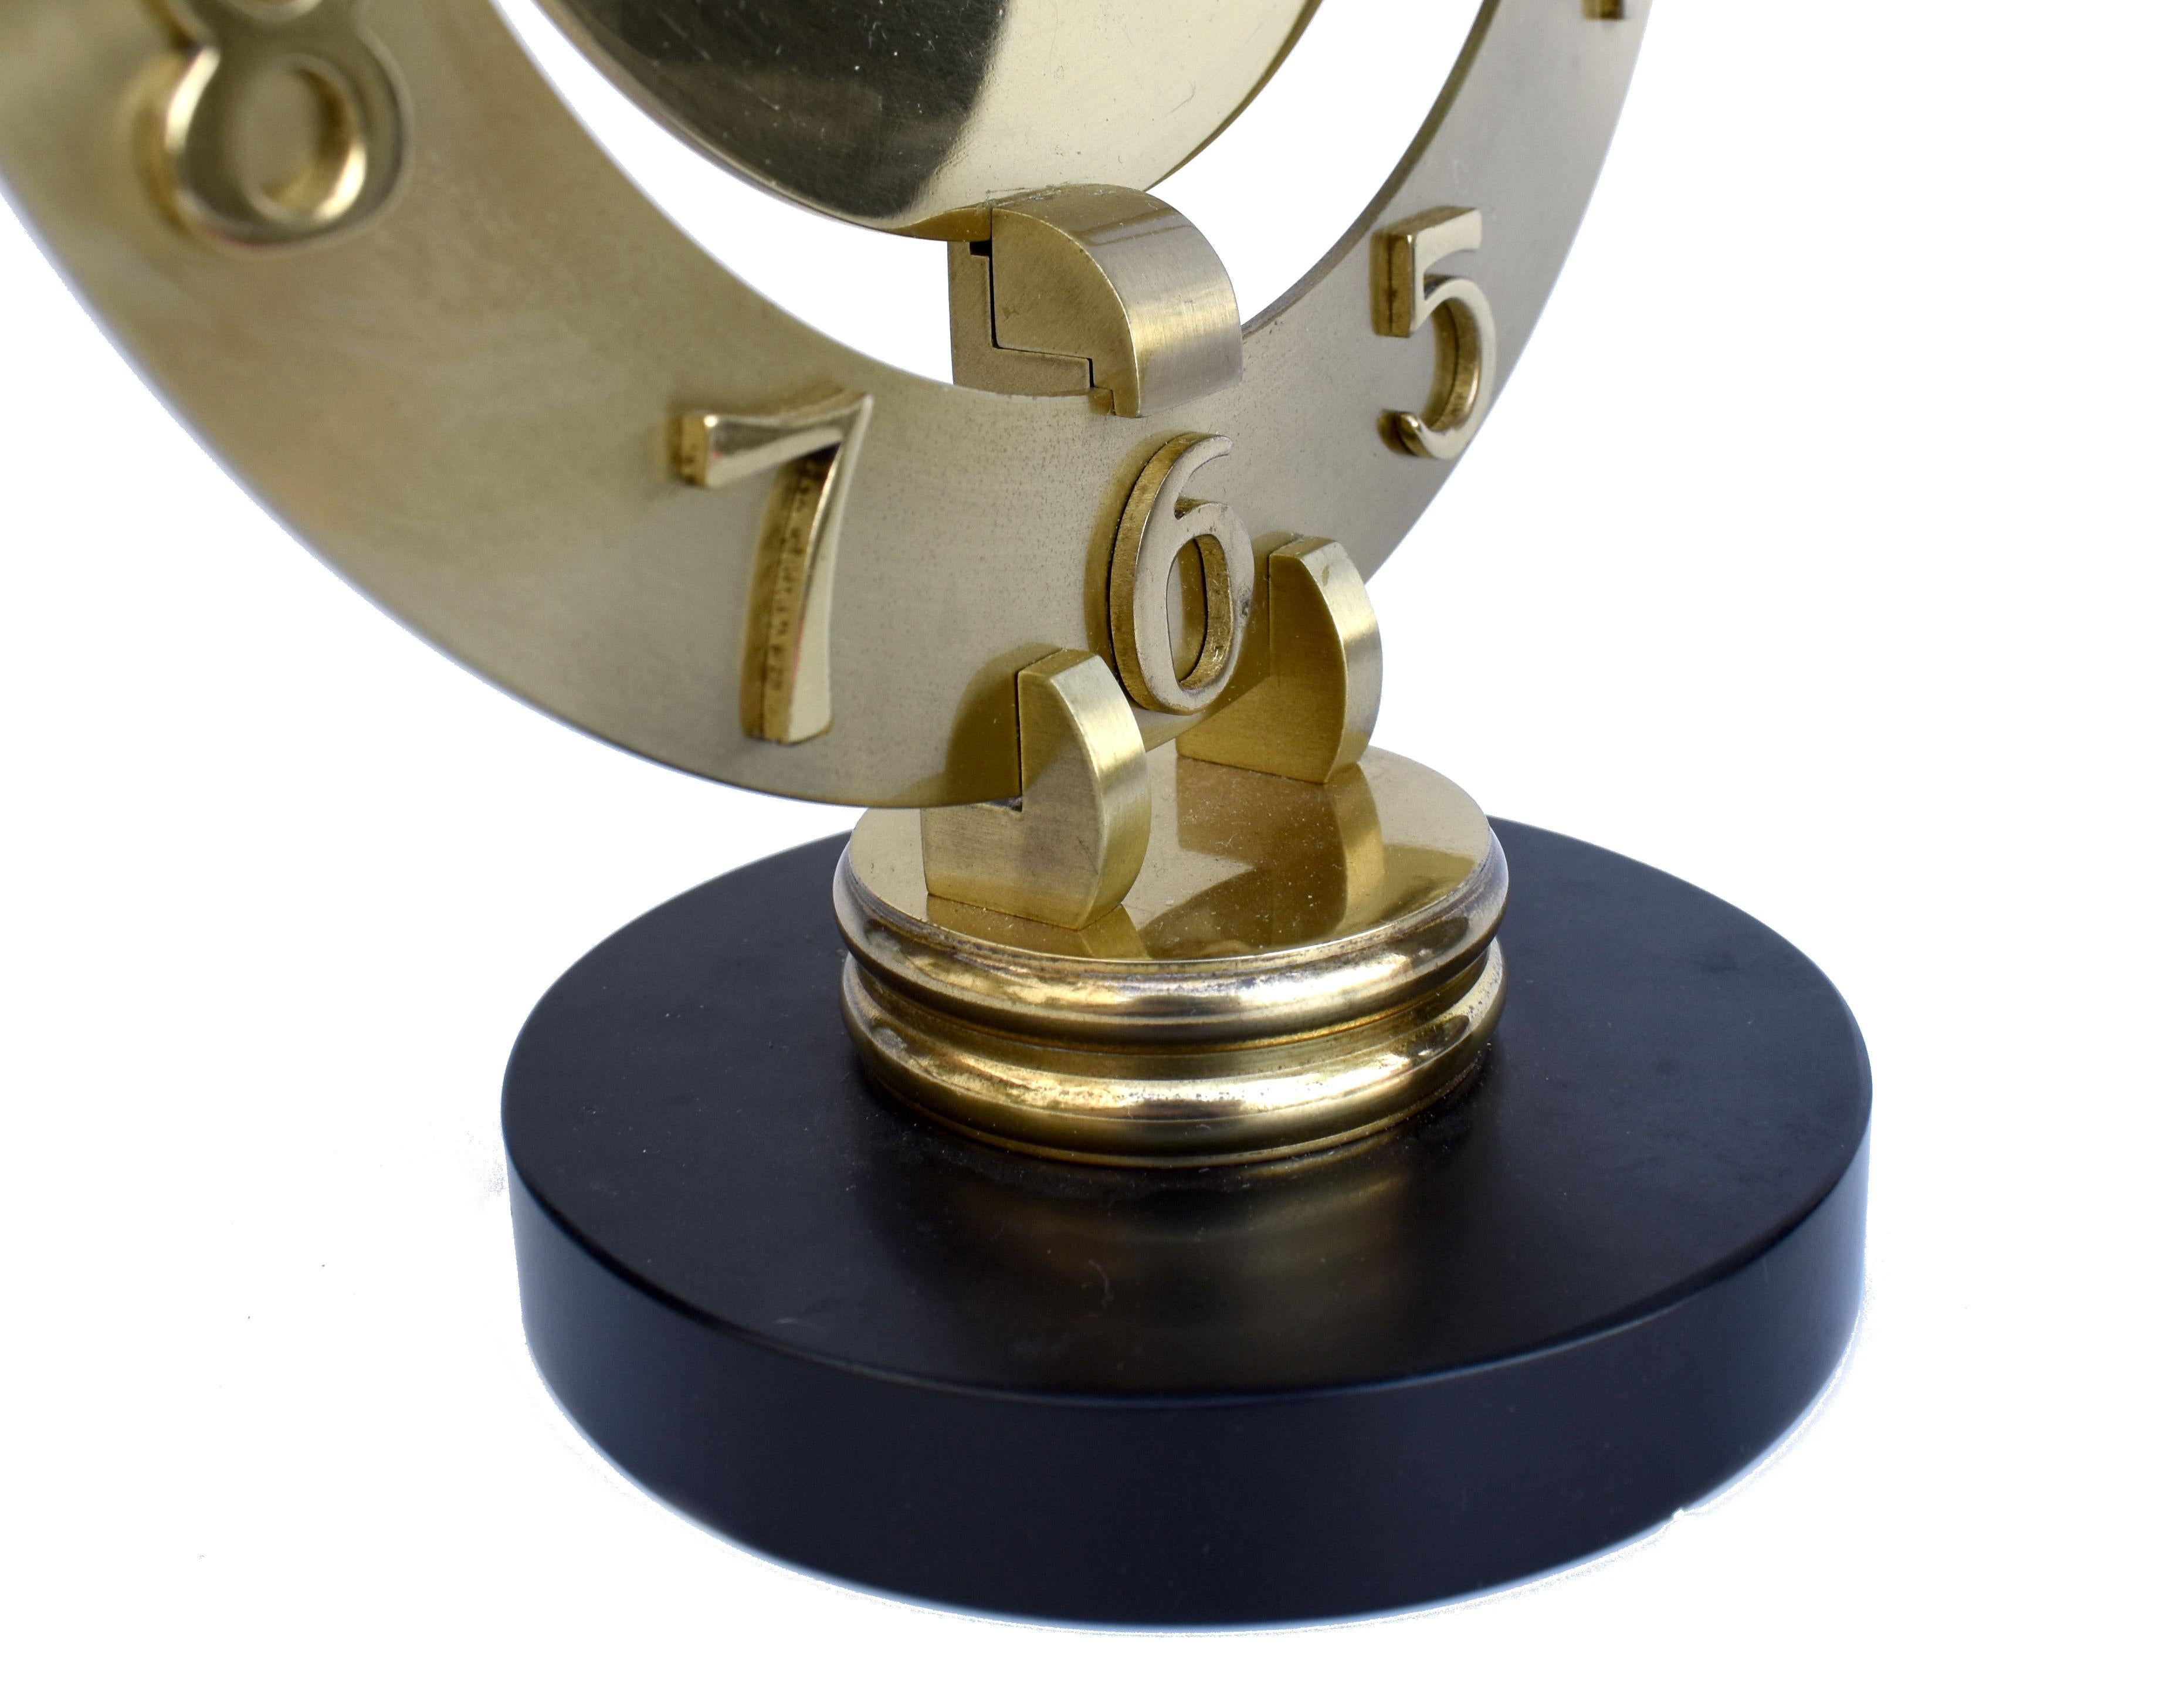 Nous vous proposons cette élégante pendule de cheminée Art Déco des horlogers français Bayard. Datant des années 1930, cette horloge est équipée d'un mouvement mécanique à remontage automatique qui a été révisé par des professionnels et qui est donc